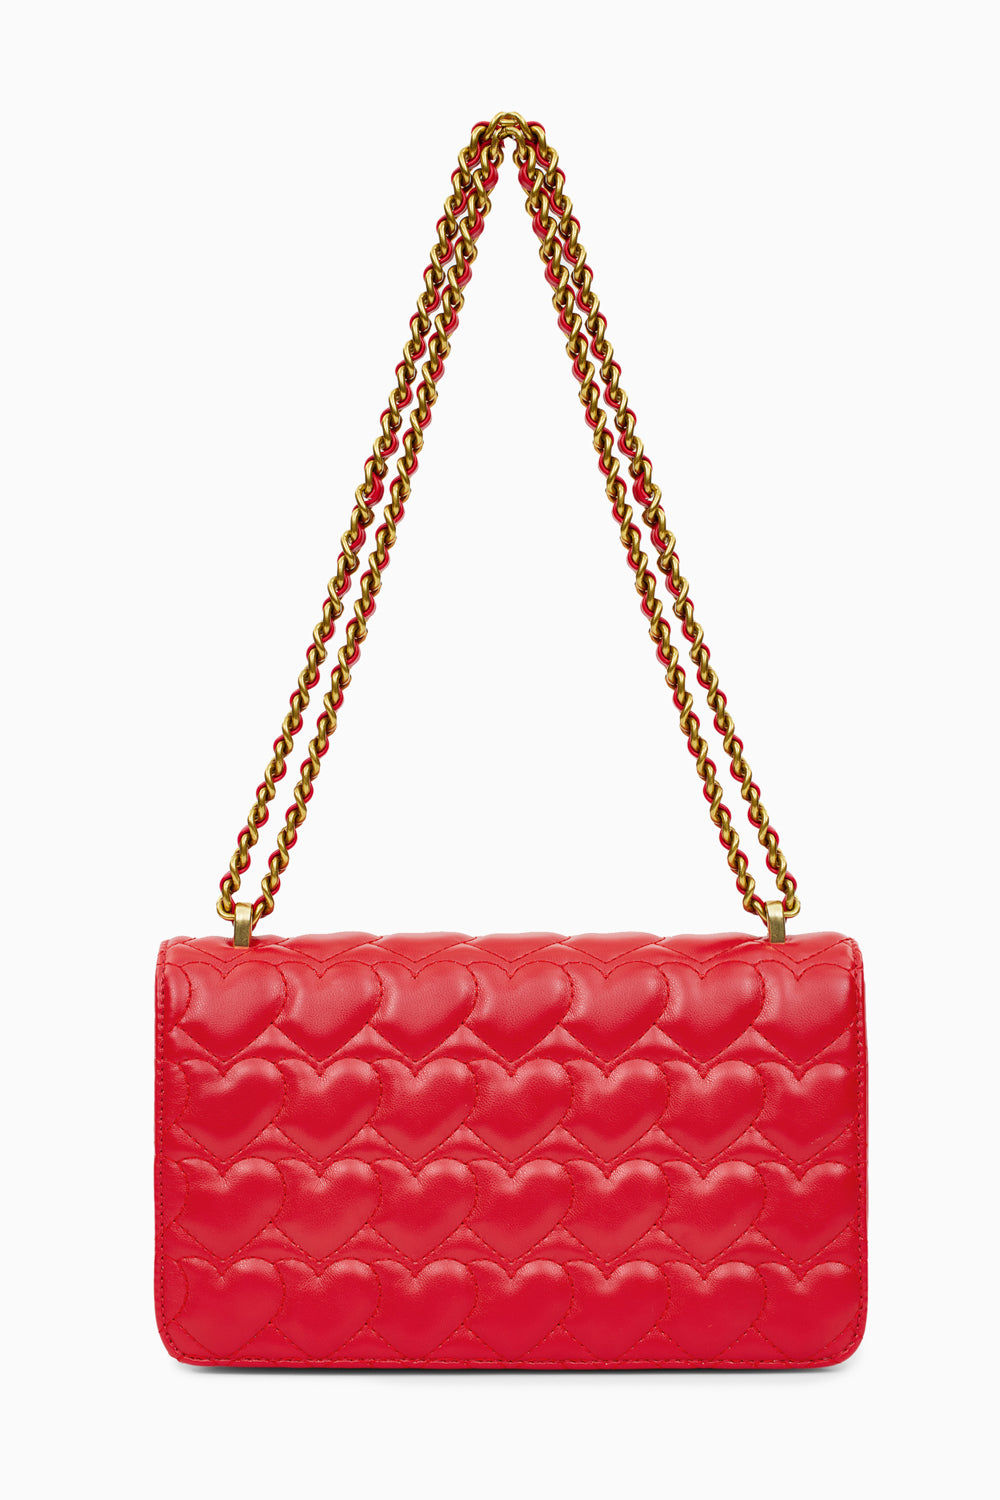 Desire Red Shoulder Bag